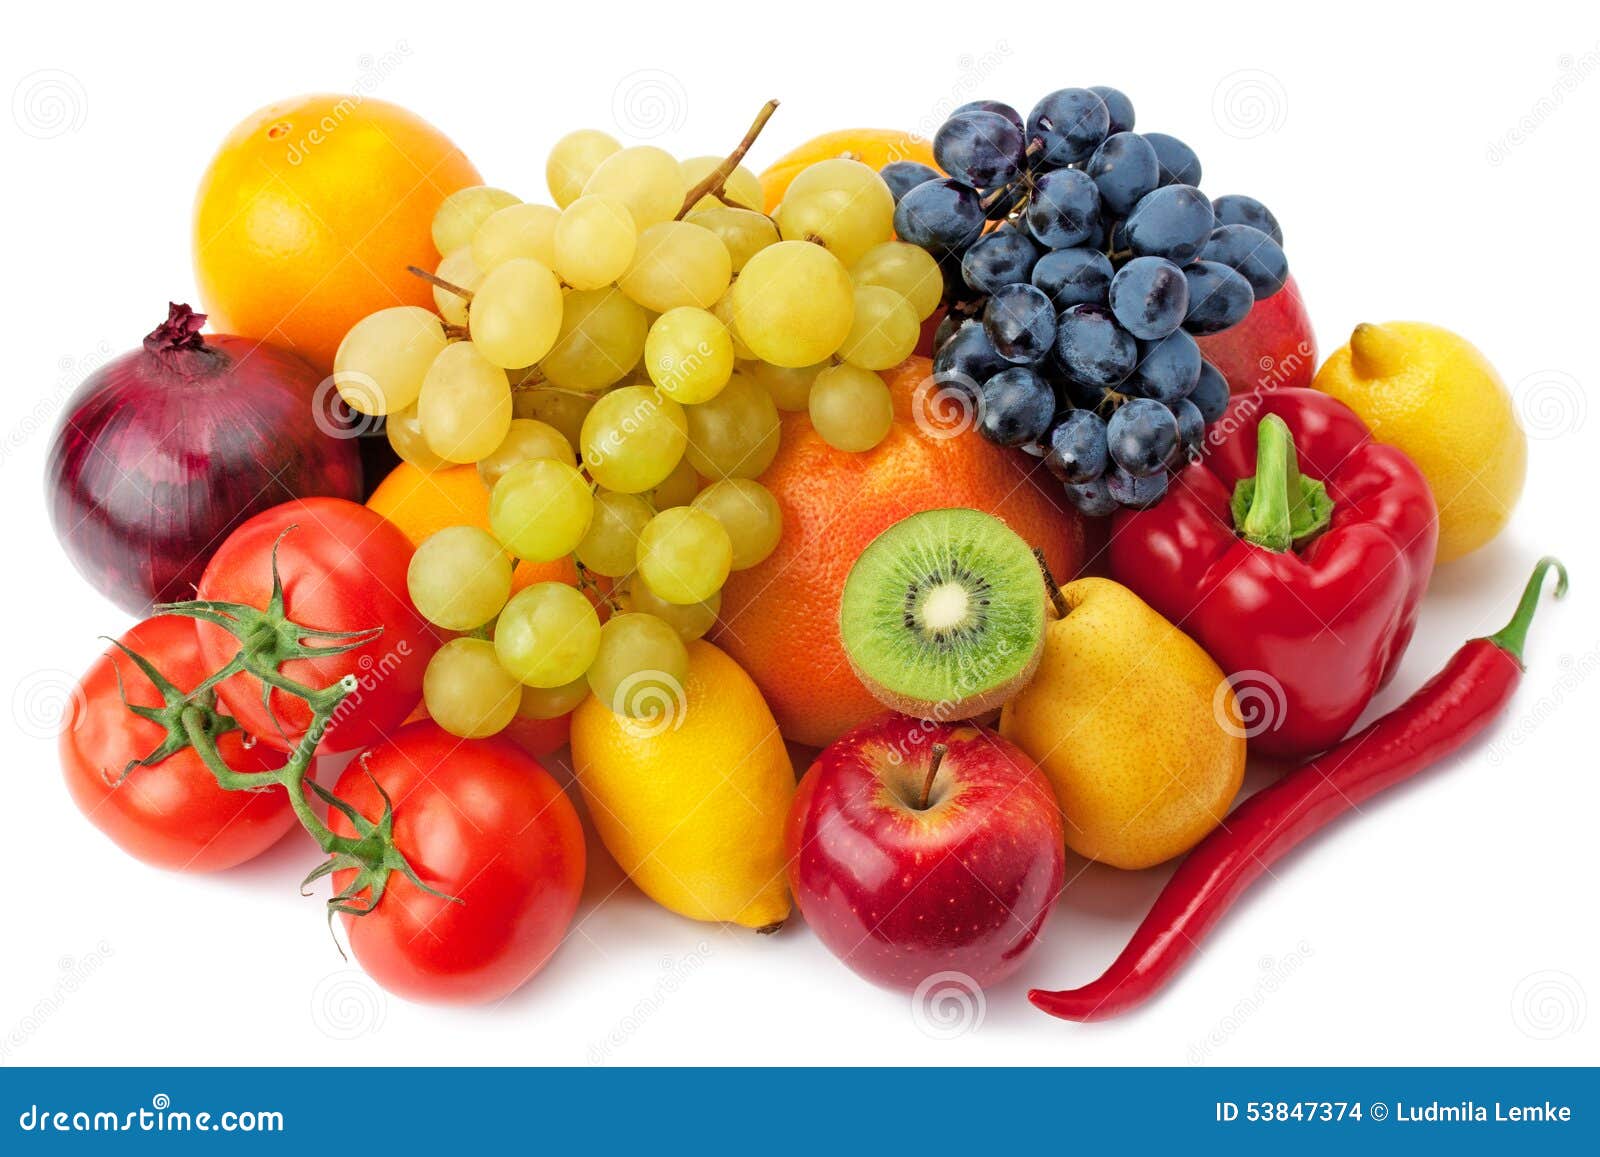 果菜类 库存照片. 图片 包括有 本质, 橙色, 胡椒, 黄色, 自治权, 蜜桔, 南瓜, 万圣节, 蔬菜 - 6483828